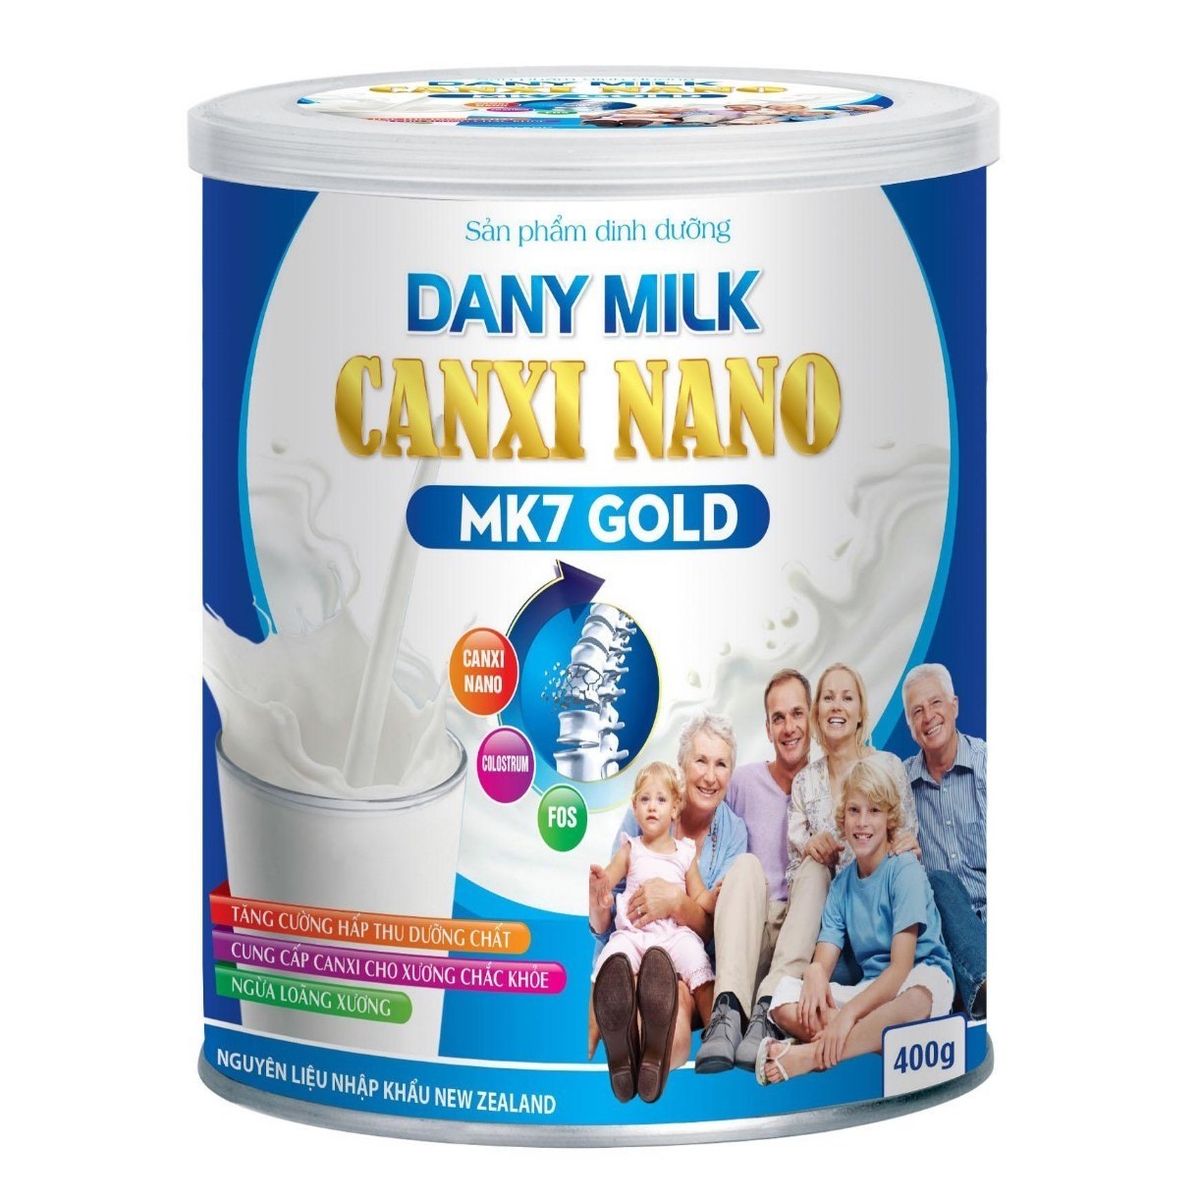 Sữa Bột Dinh Dưỡng Dany Milk Canxi Nano MK7 Gold Giúp Tăng Hấp Thu Canxi Bổ Sung Dưỡng Chất Ngăn Ngừa Loãng Xương